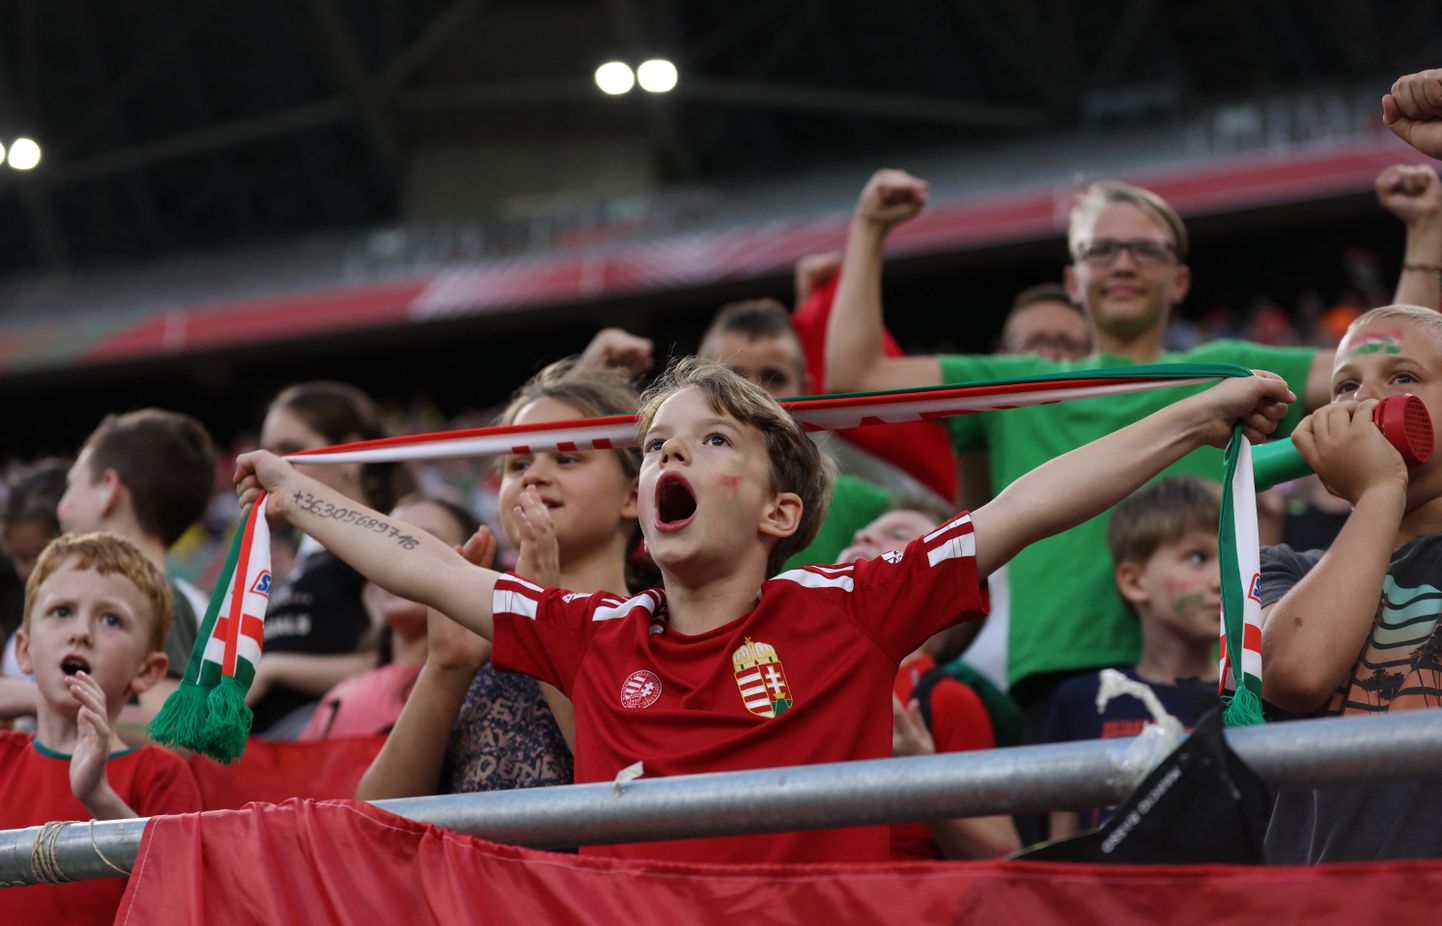 Ungari häälekad lapsfännid viisid oma meeskonna võidule.